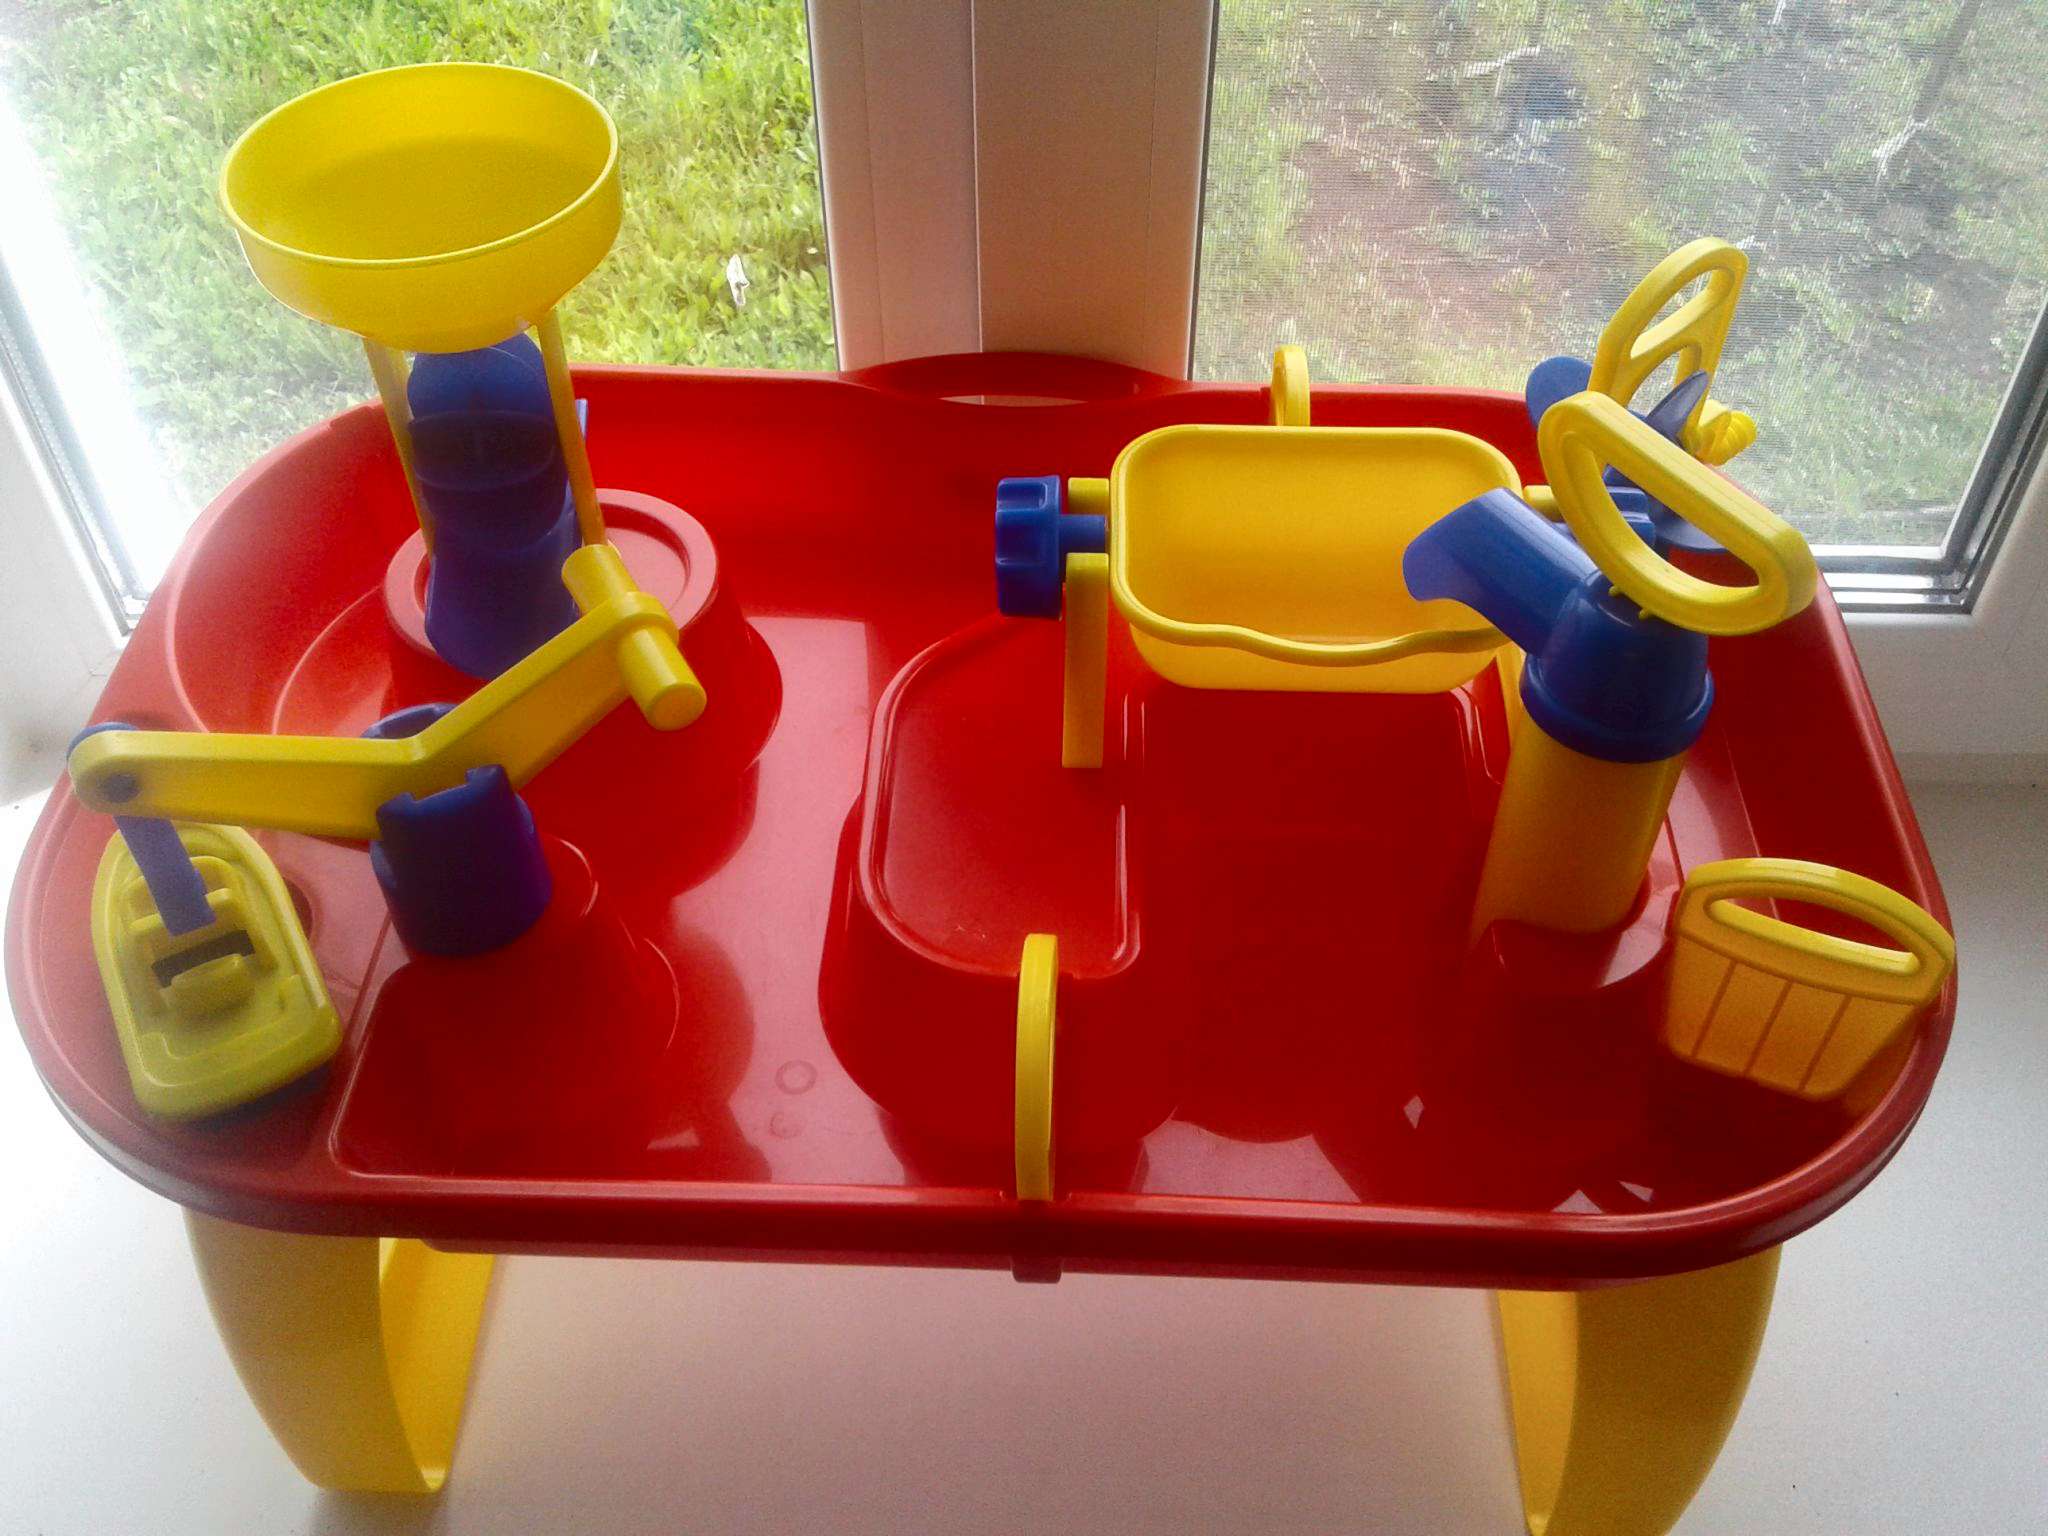 водный столик для детей полесье